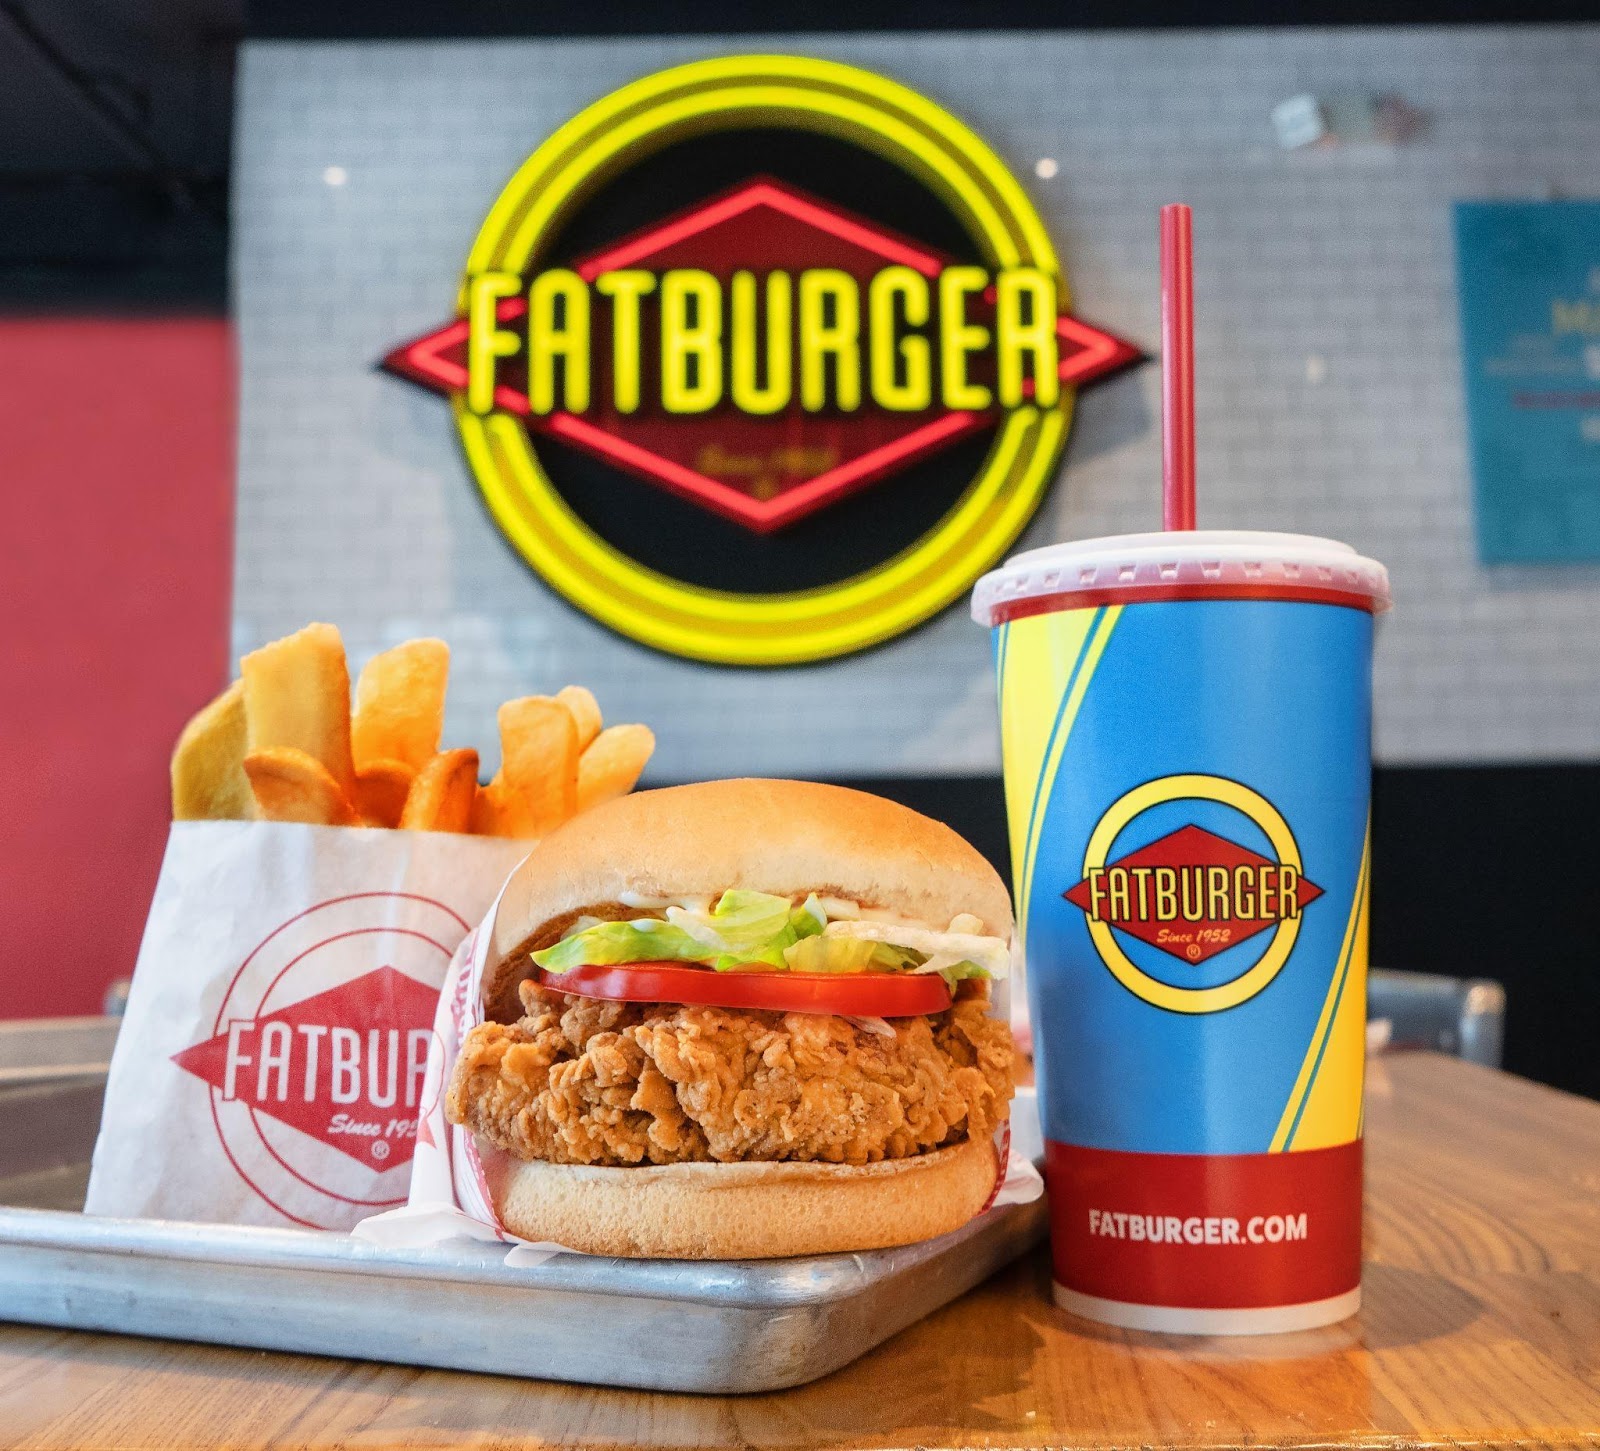 Fatburguer, la hamburguesa consentida de Hollywood.